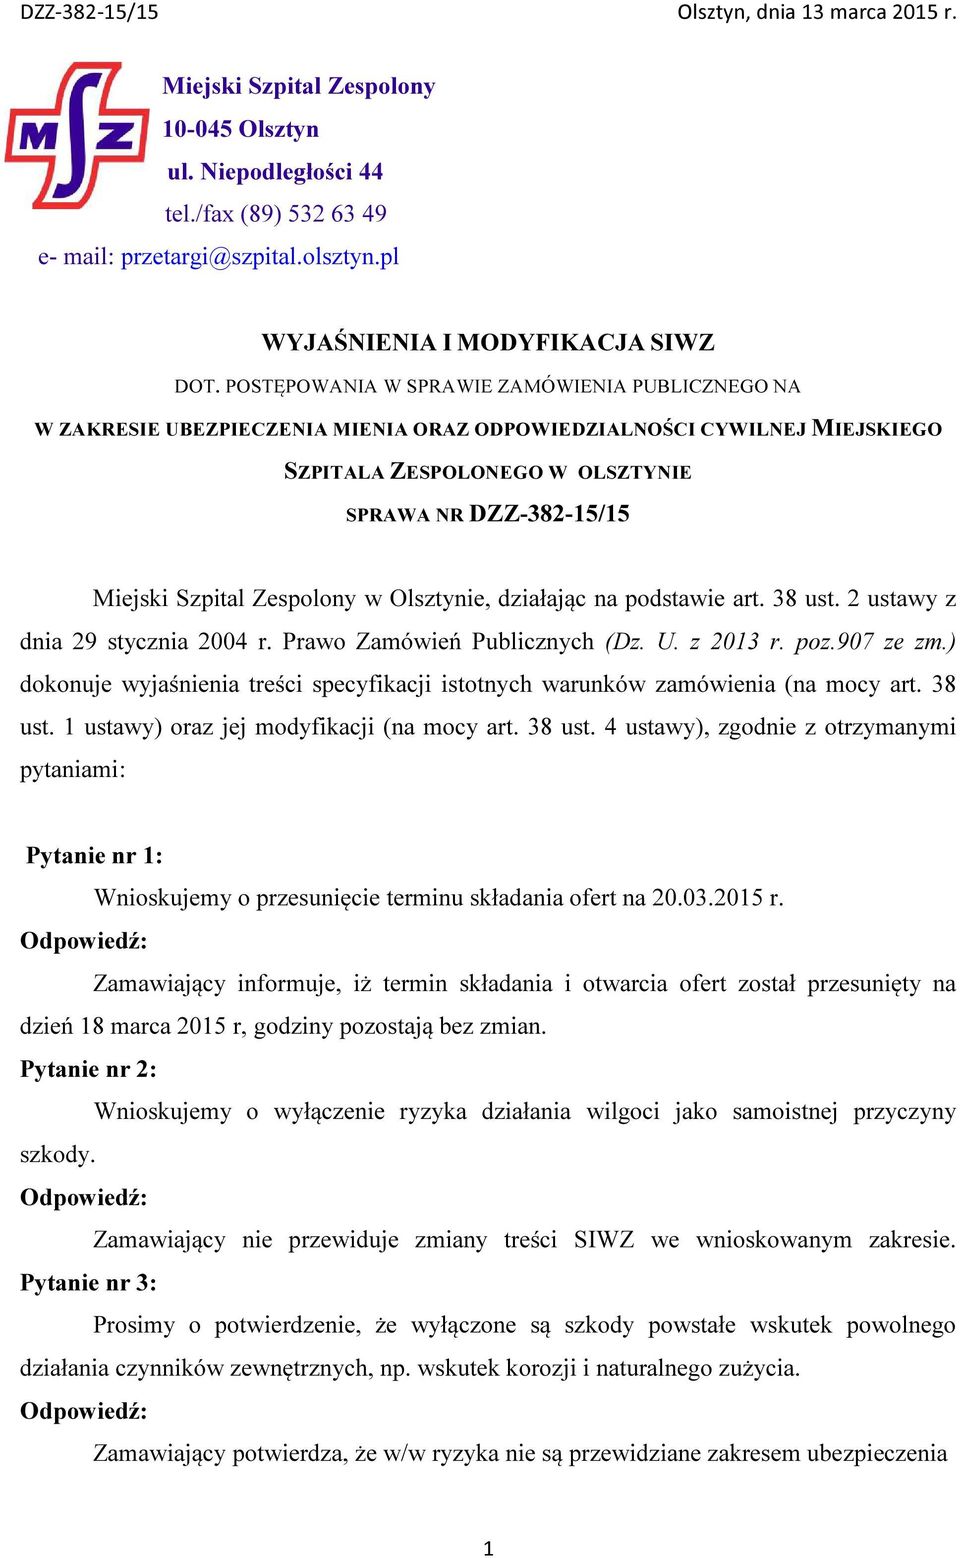 Zespolony w Olsztynie, działając na podstawie art. 38 ust. 2 ustawy z dnia 29 stycznia 2004 r. Prawo Zamówień Publicznych (Dz. U. z 2013 r. poz.907 ze zm.